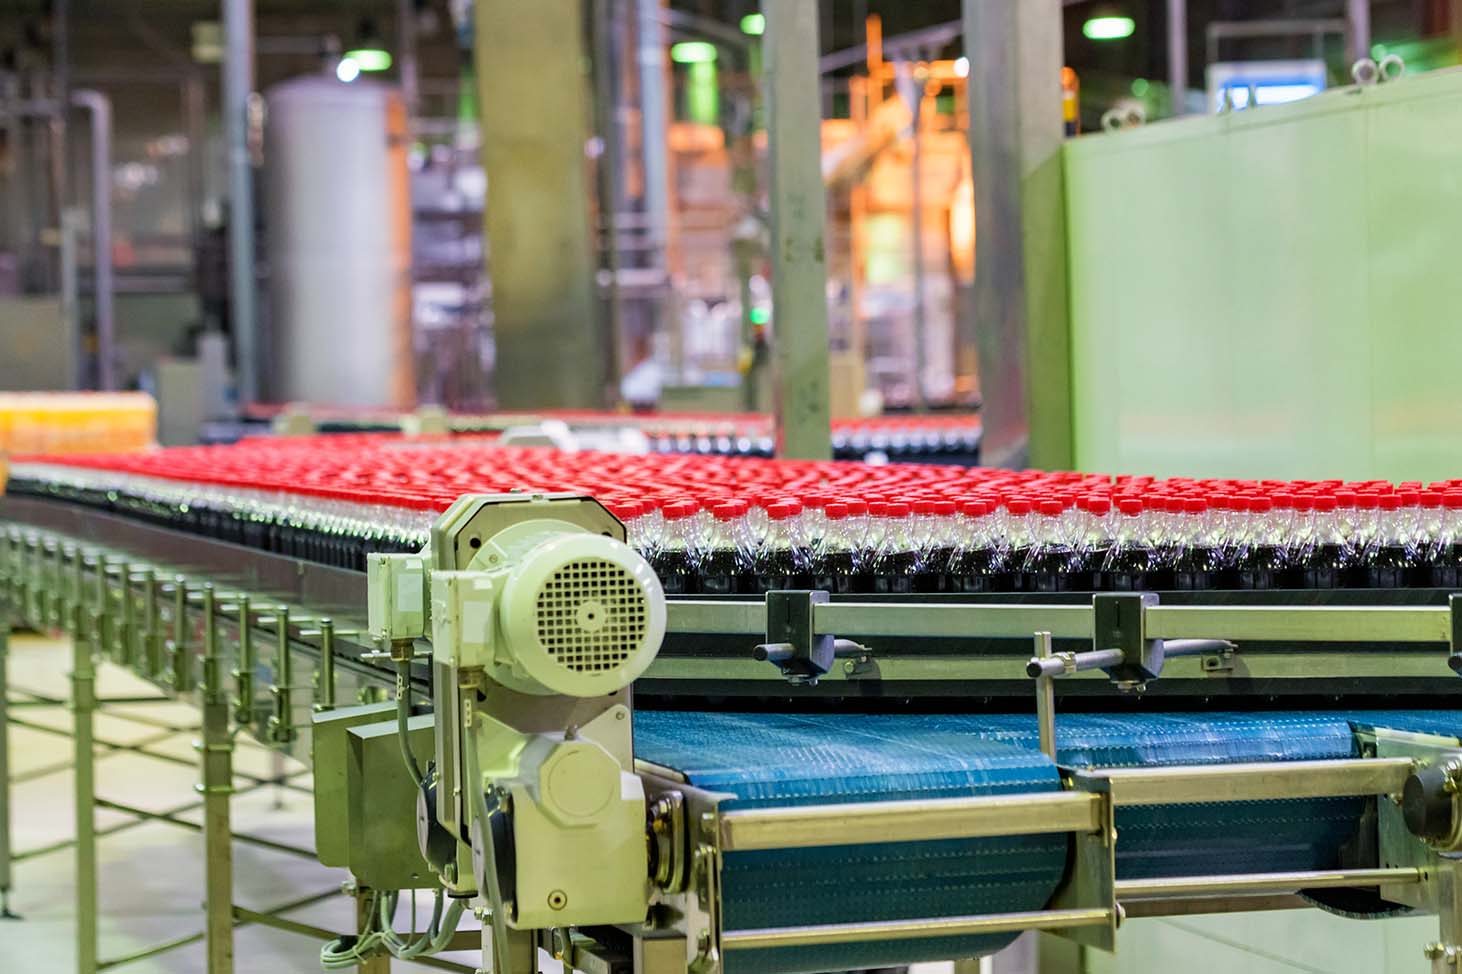 plastic 2 liter bottles on a conveyor belt in a Beverage manufacturing plant